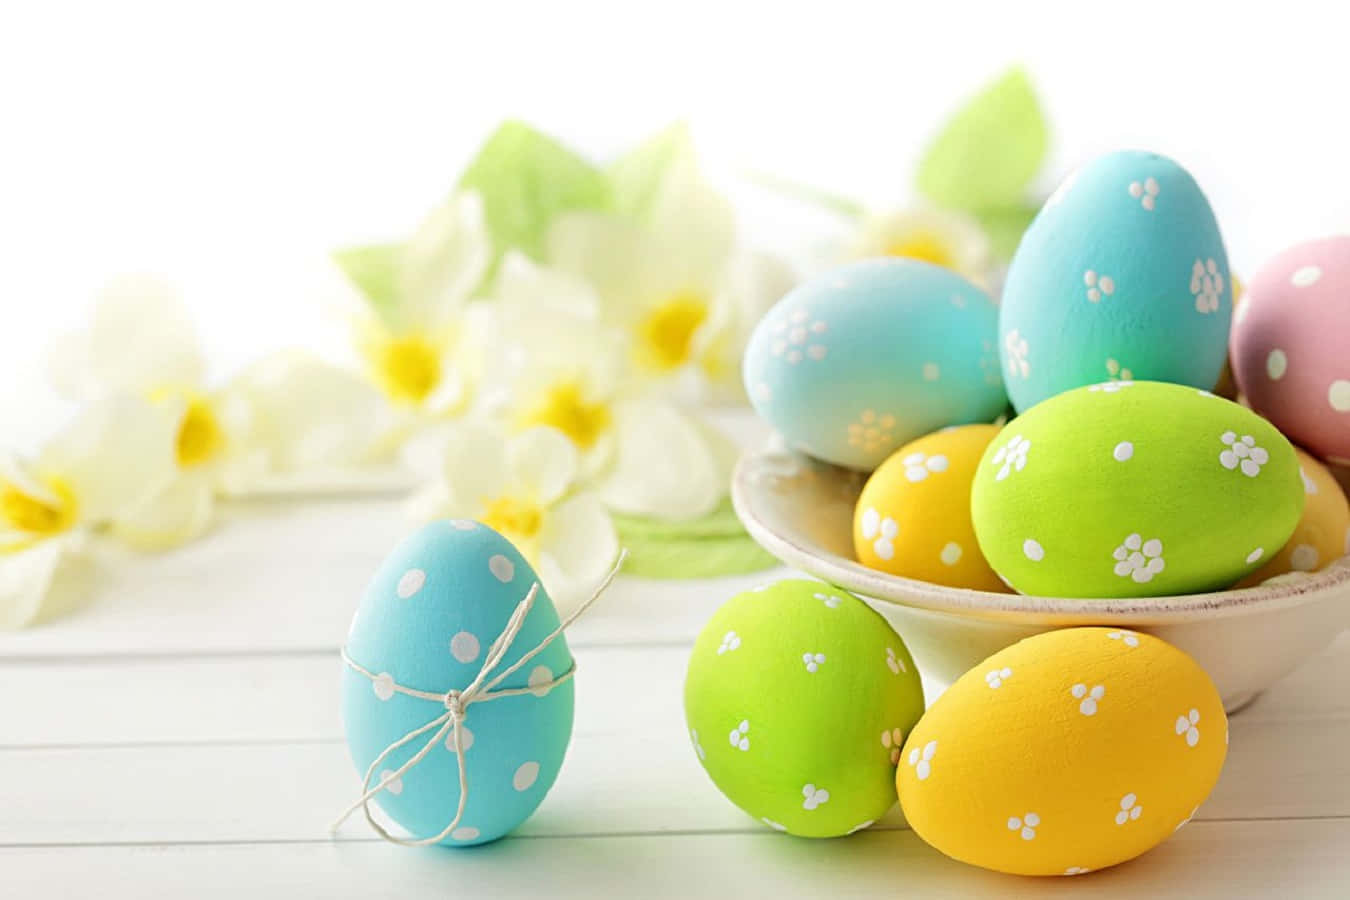 Feiernsie Ostern Mit Einem Hauch Von Farbe Mit Diesem Festlichen Pastellfarbenen Oster-hintergrund.